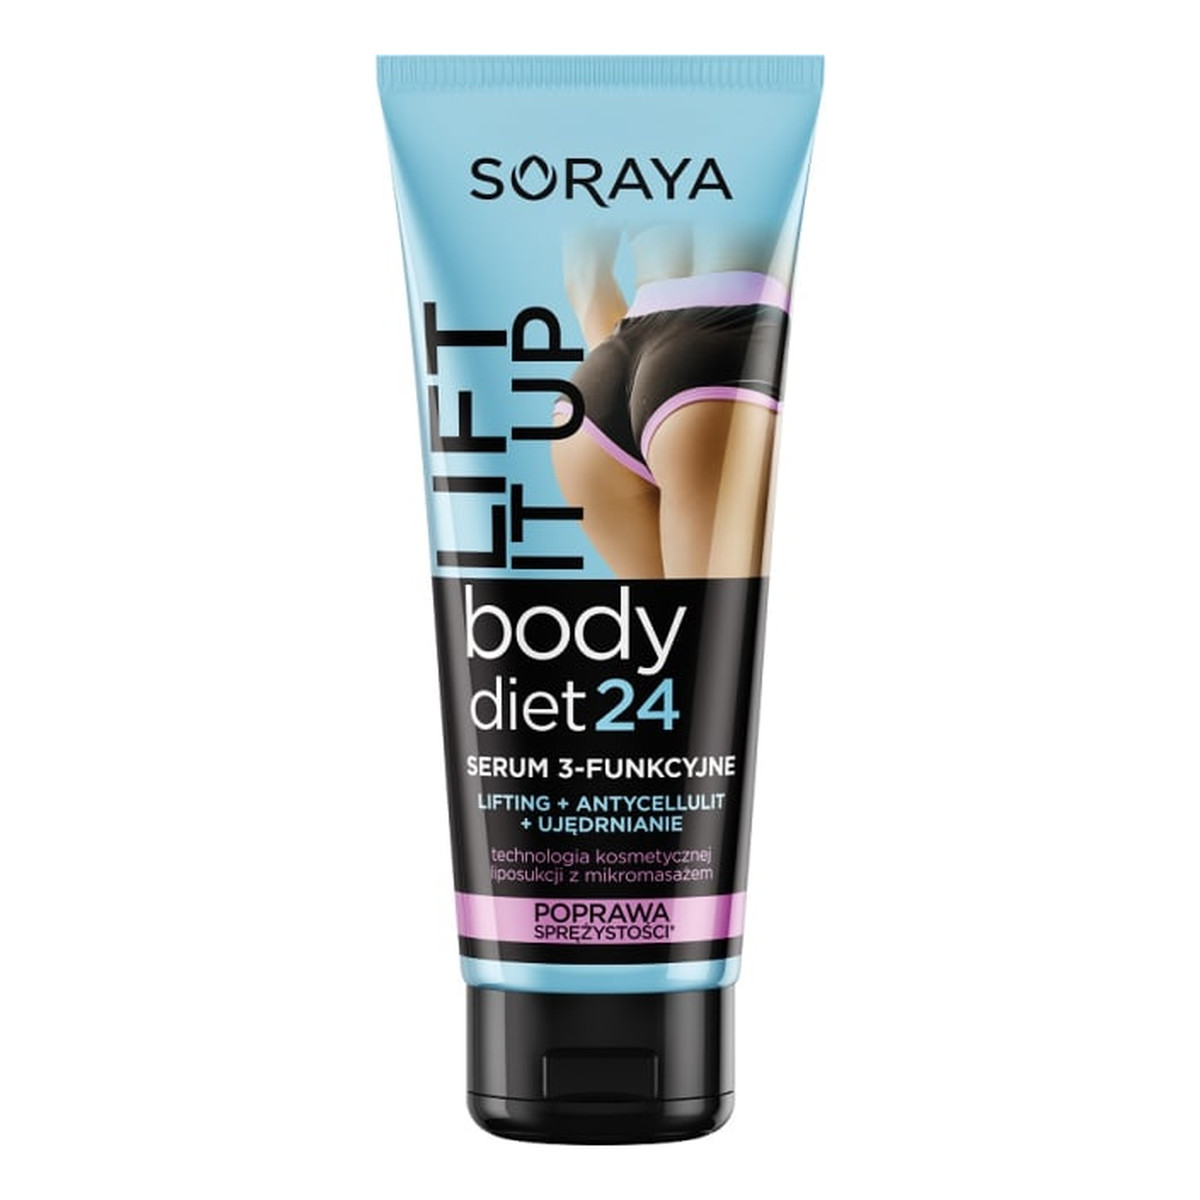 Soraya Body Diet24 Serum 3-Funkcyjne Ujedrnianie Lifting Cellulit 200ml